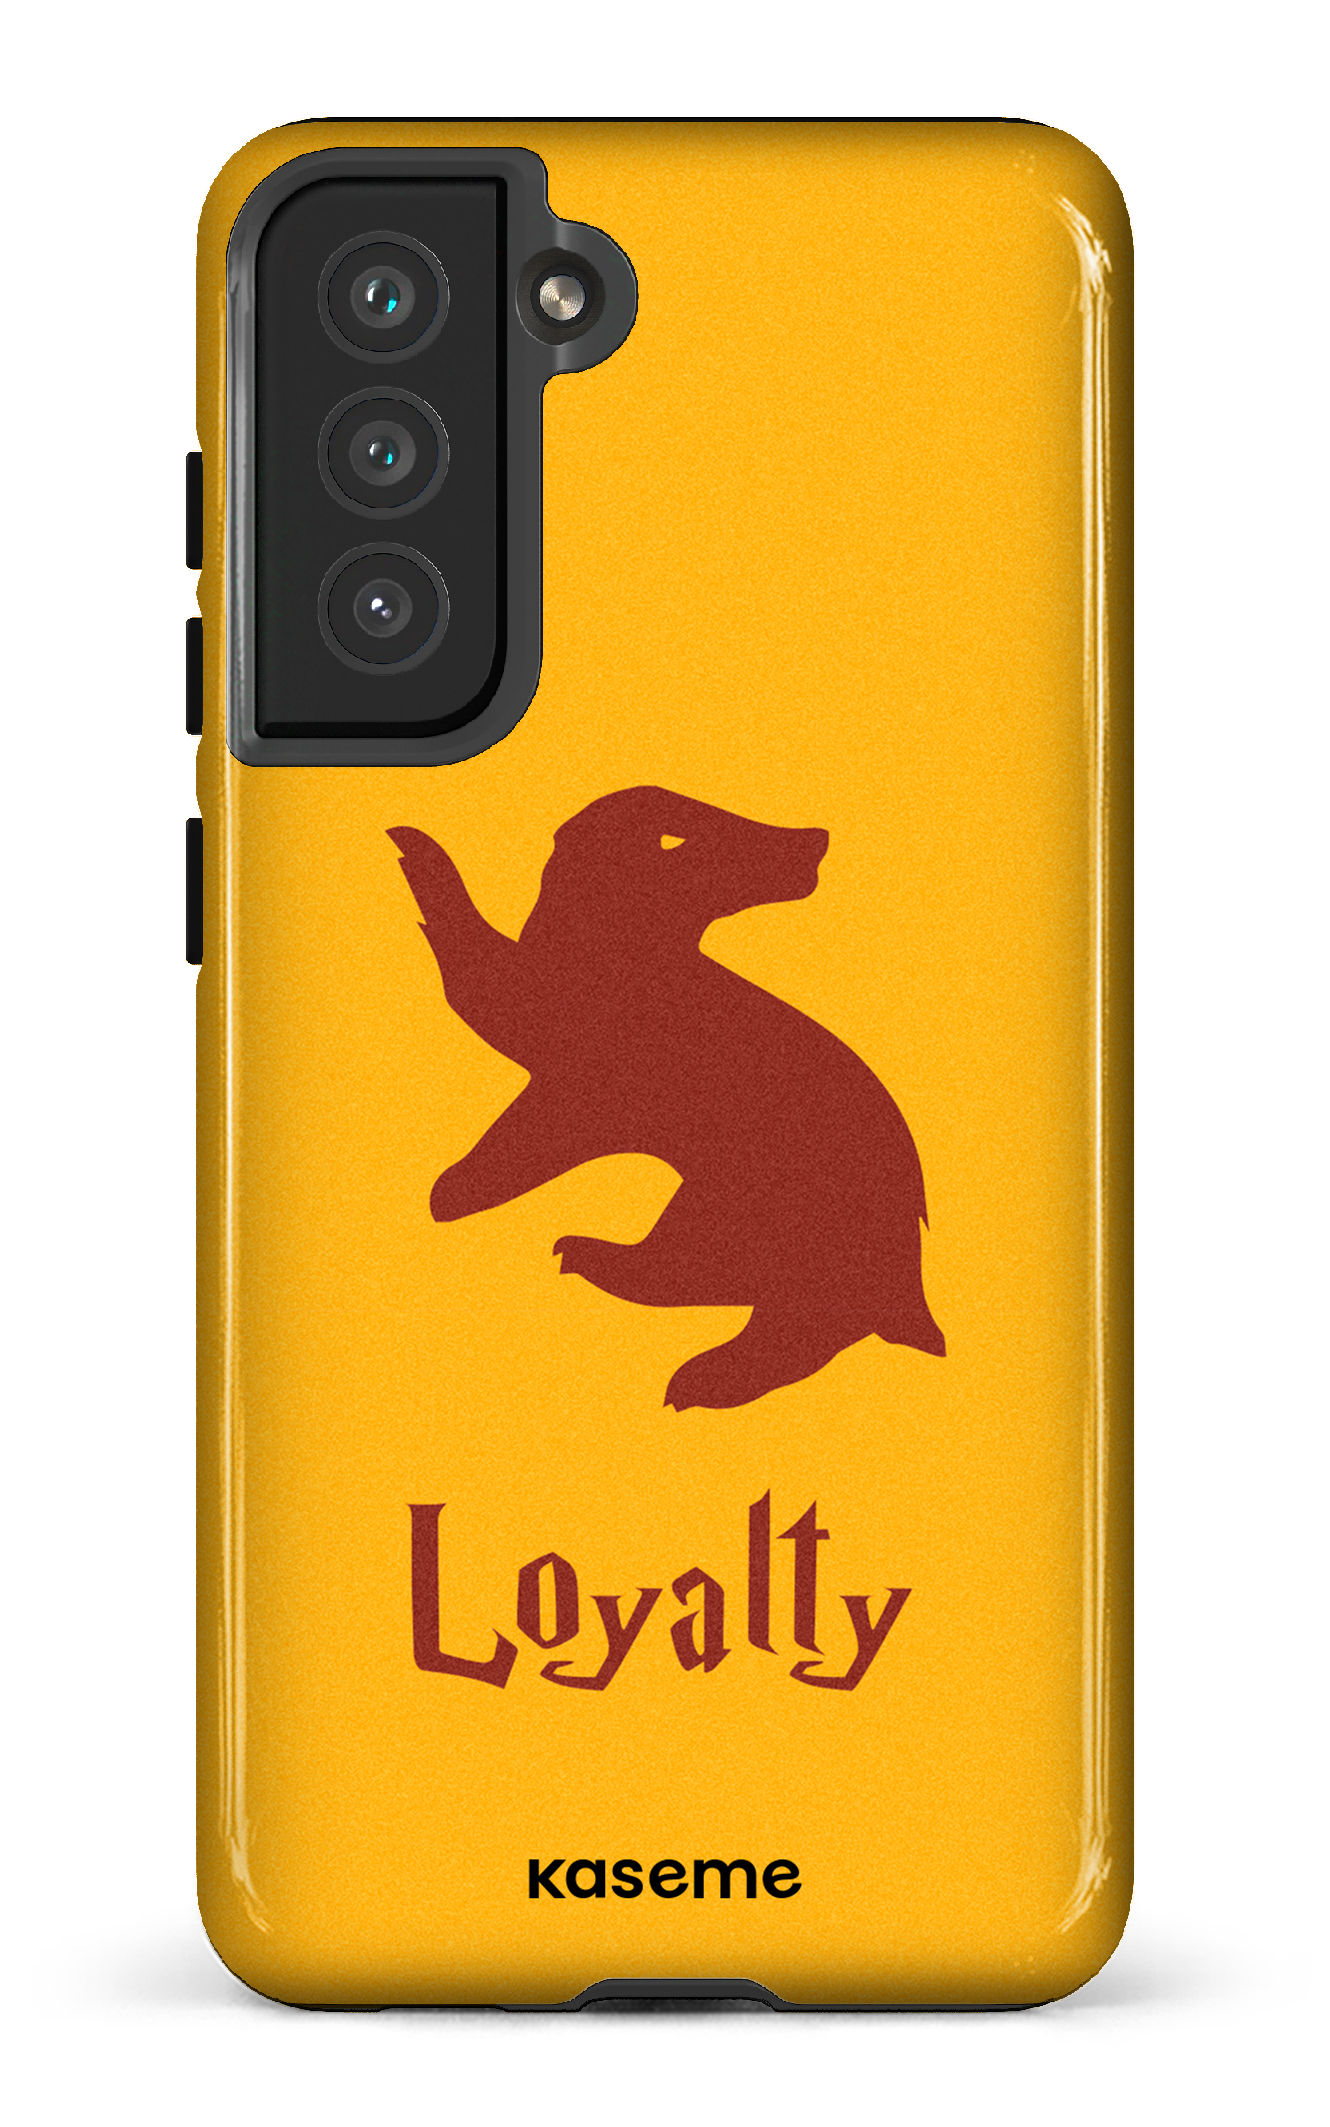 Loyalty - Galaxy S21 FE